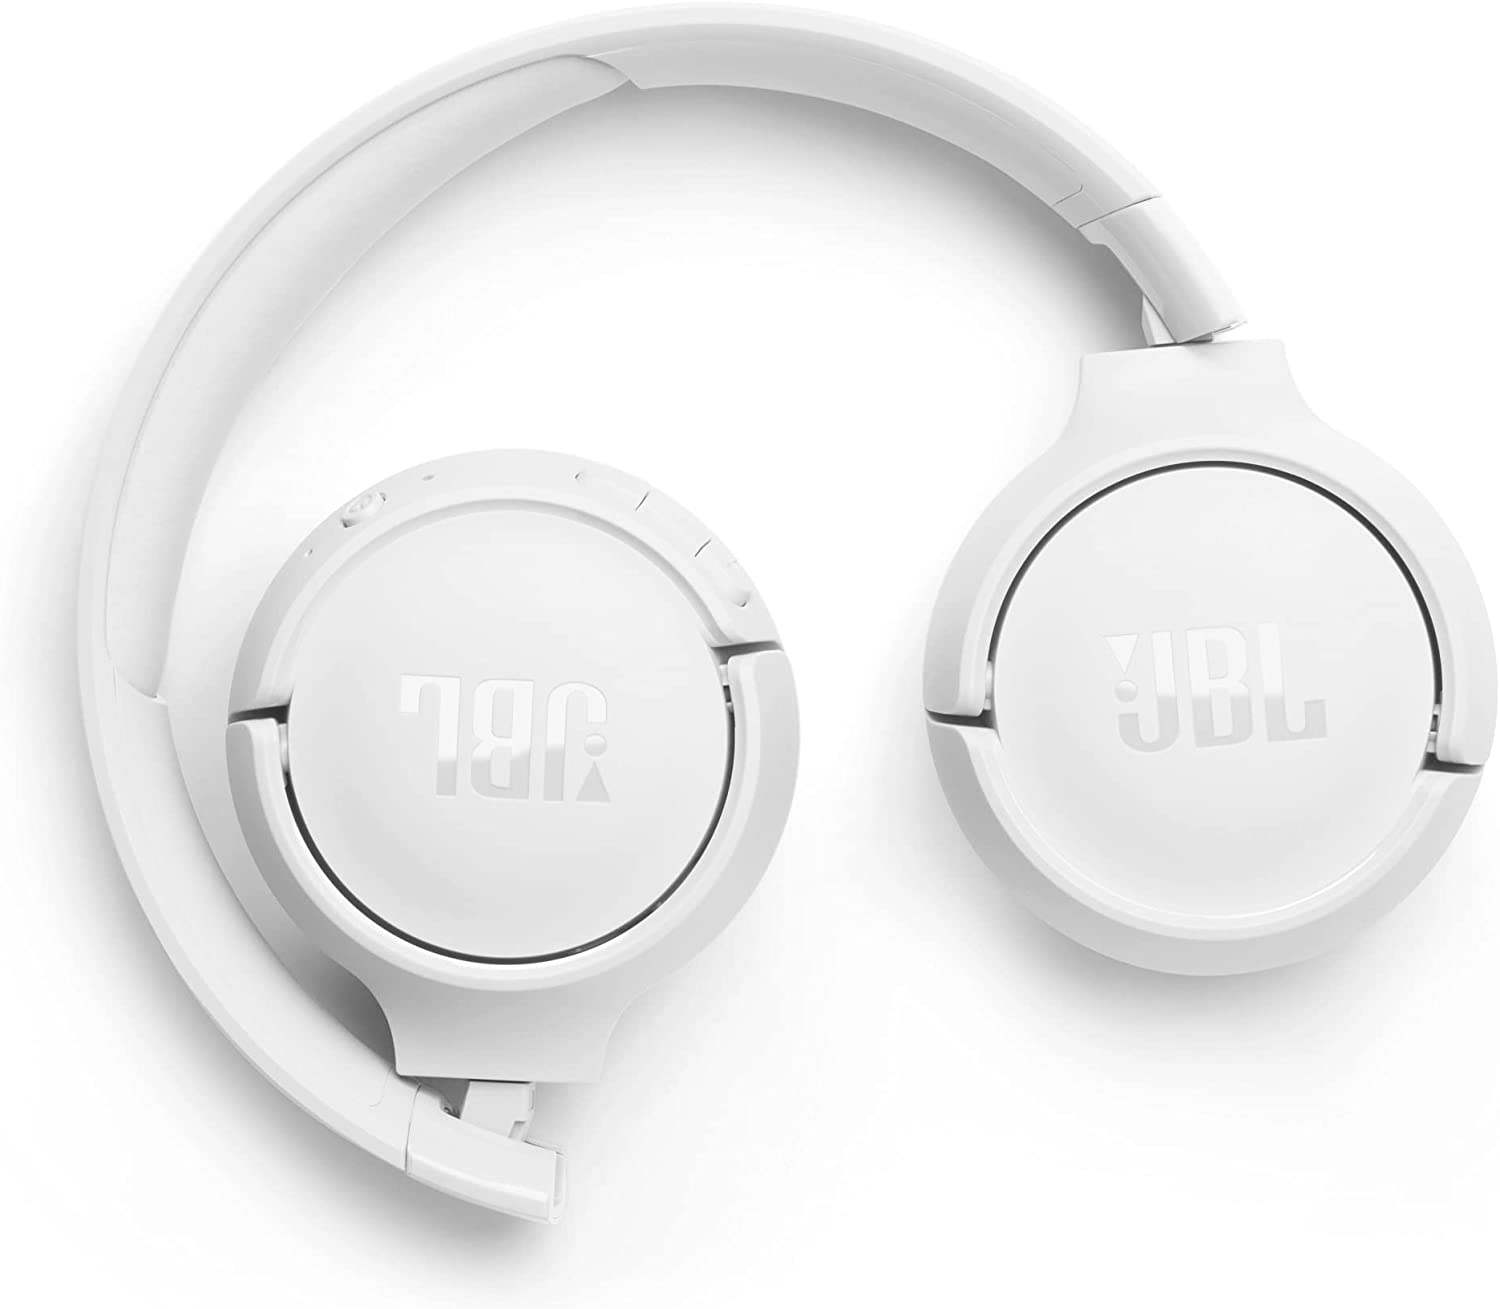 JBL TUNE 520BT Wireless On-ear Headphone – Carlos